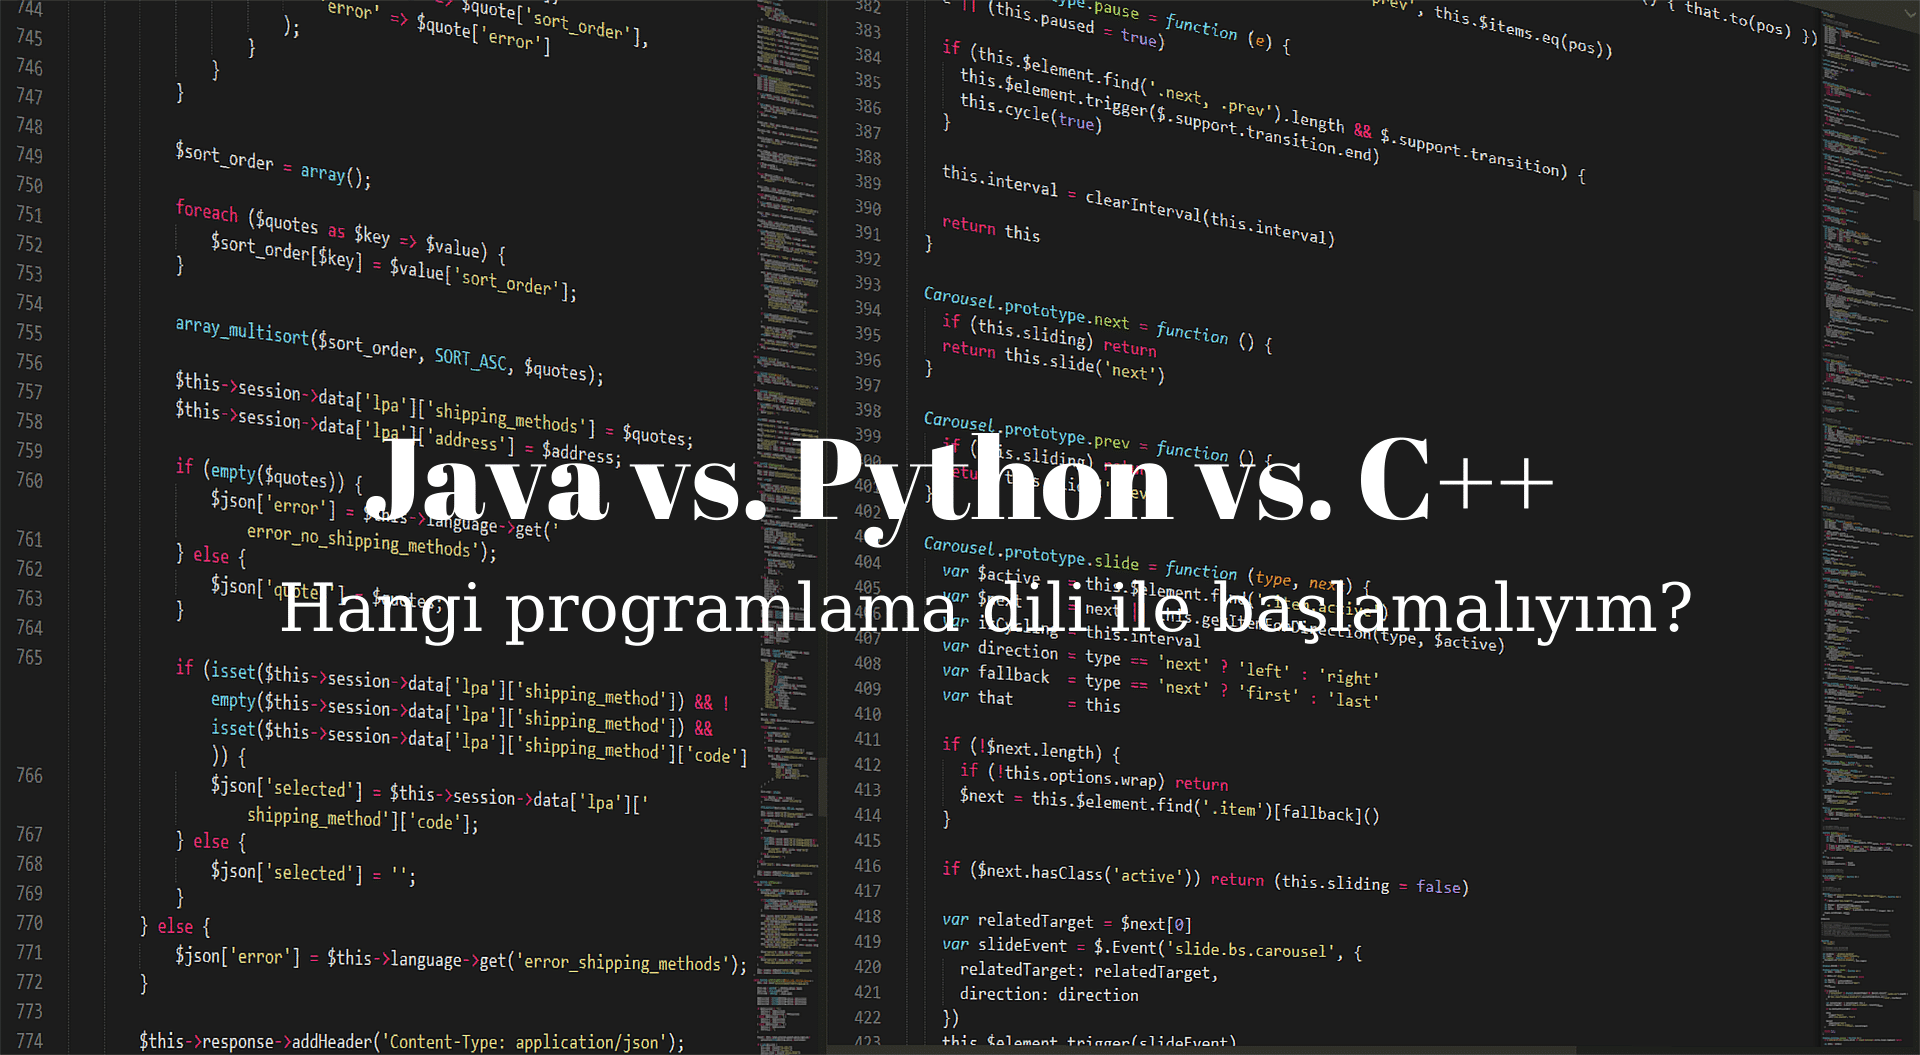 Java vs. Python vs. C++ Programlama Dili